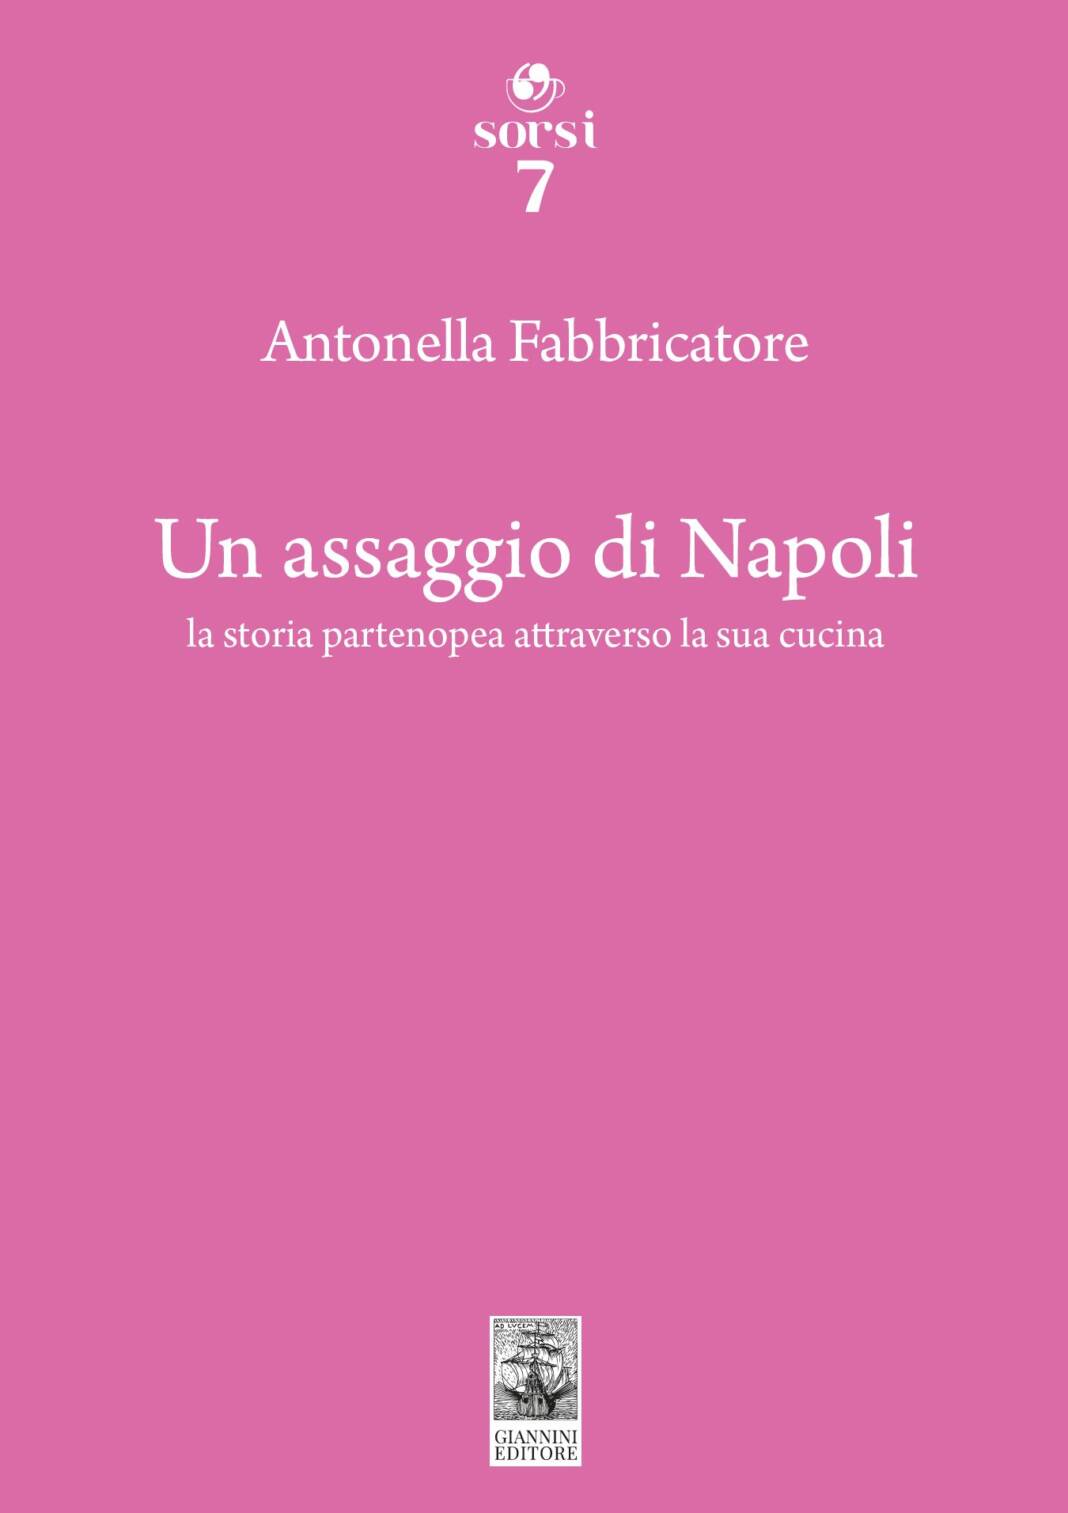 'Un assaggio di Napoli', Antonella Fabbricatore presenta il suo libro alle Officine Nautilus